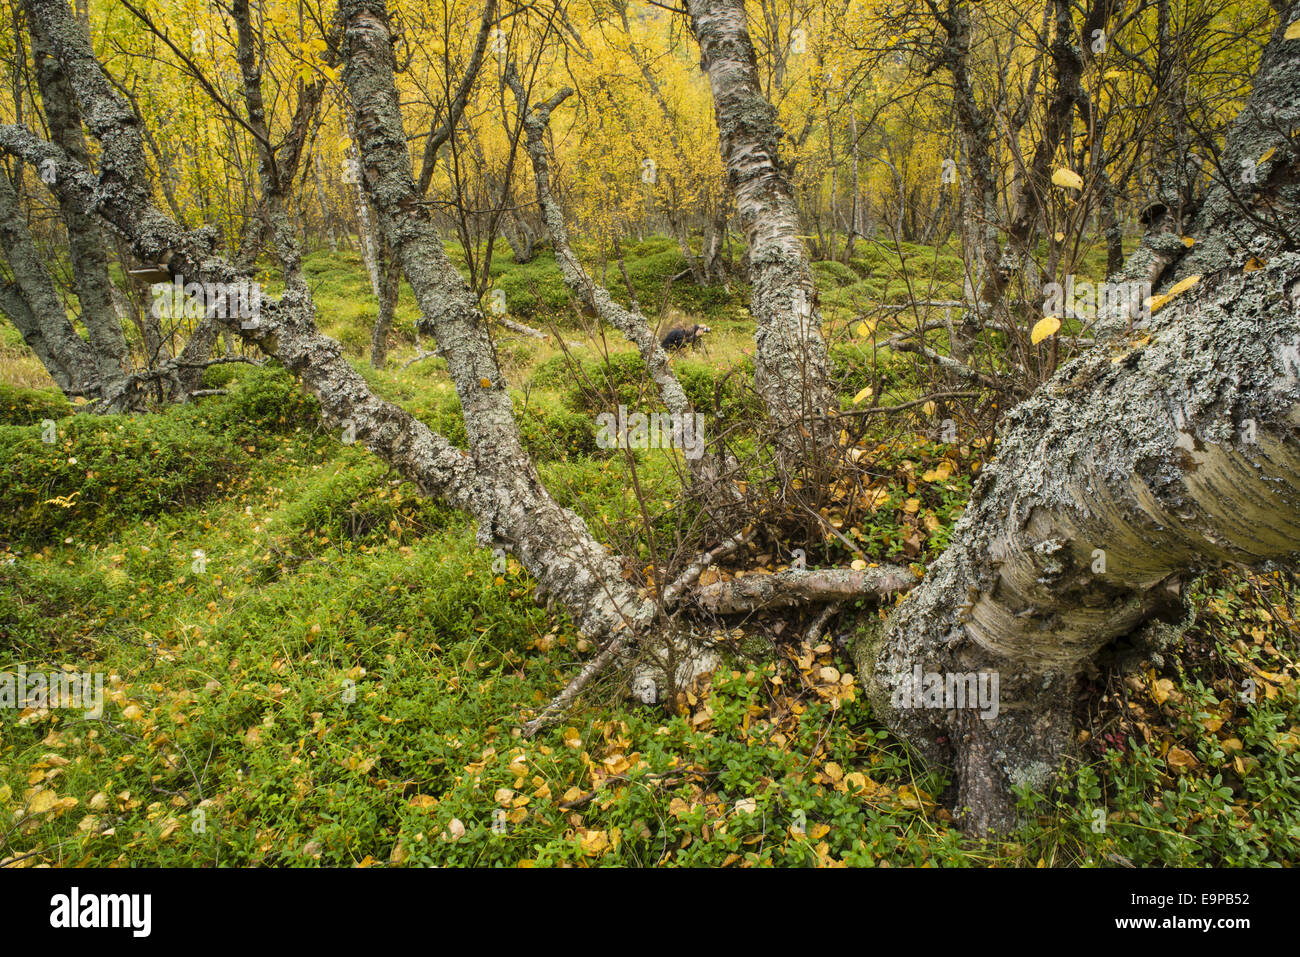 Le bouleau verruqueux (Betula pendula) habitat de forêt ancienne, avec des feuilles en automne, couleur, Skibotn Laponie, Norvège du Nord, septembre Banque D'Images